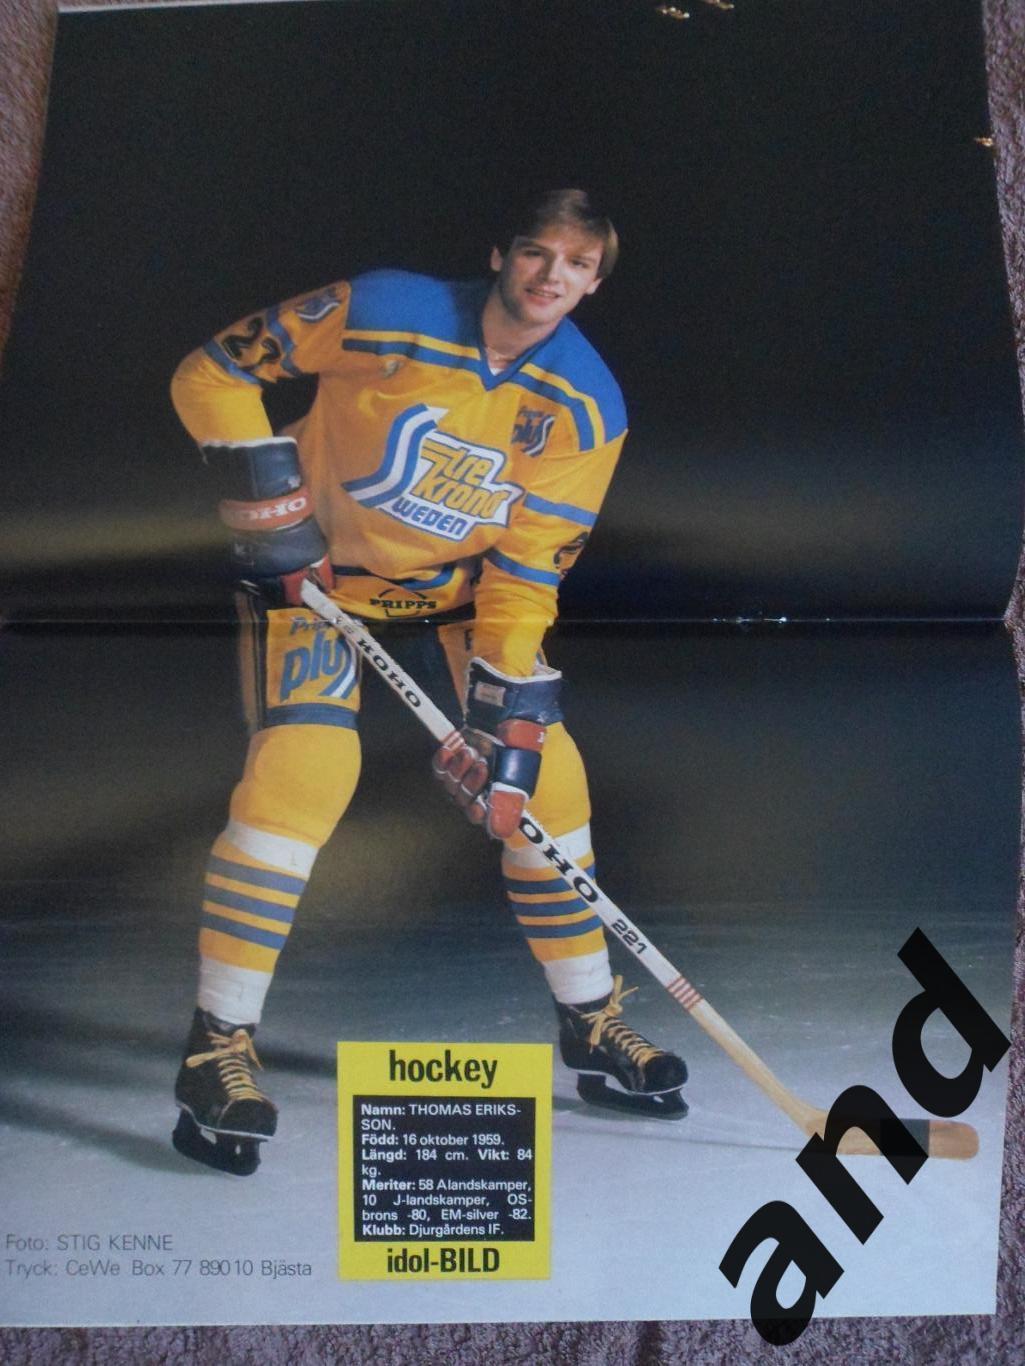 журнал Хоккей (Швеция) № 7 (1982) большой постер Эрикссон 1